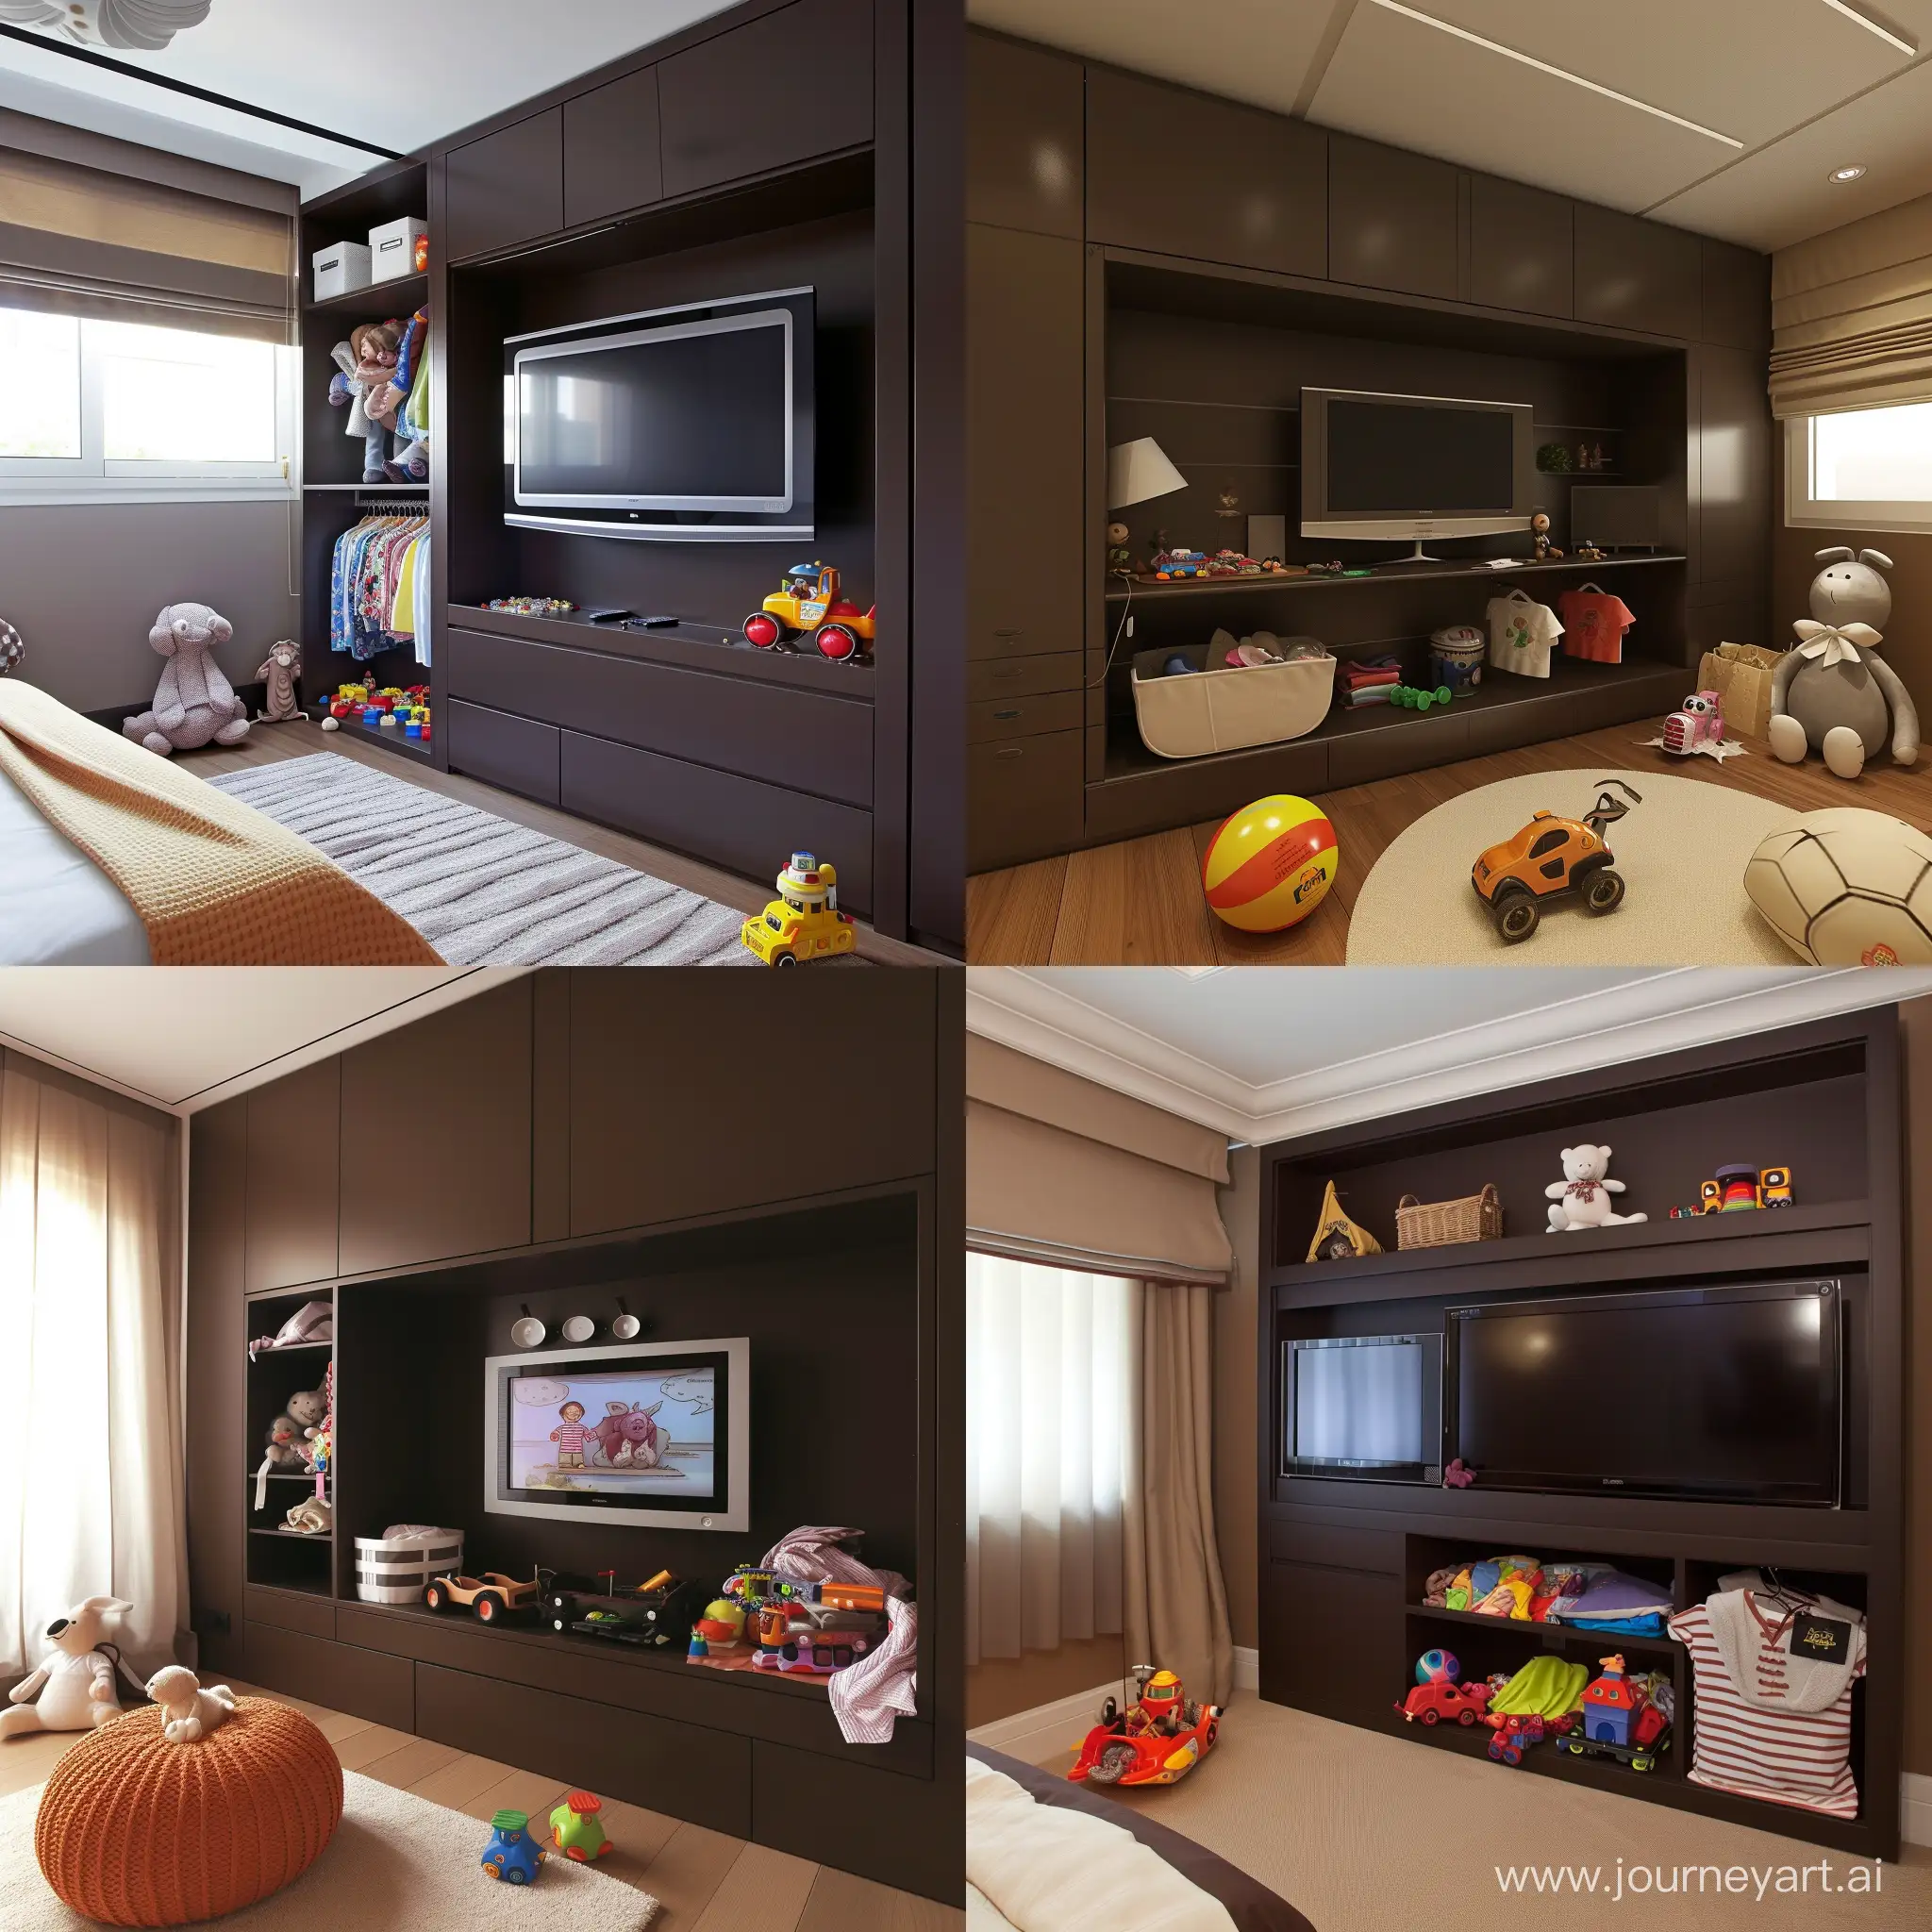 Habitación infantil estilo contemporáneo color chocolate, con televisión y área para guardar ropa y juguetes

